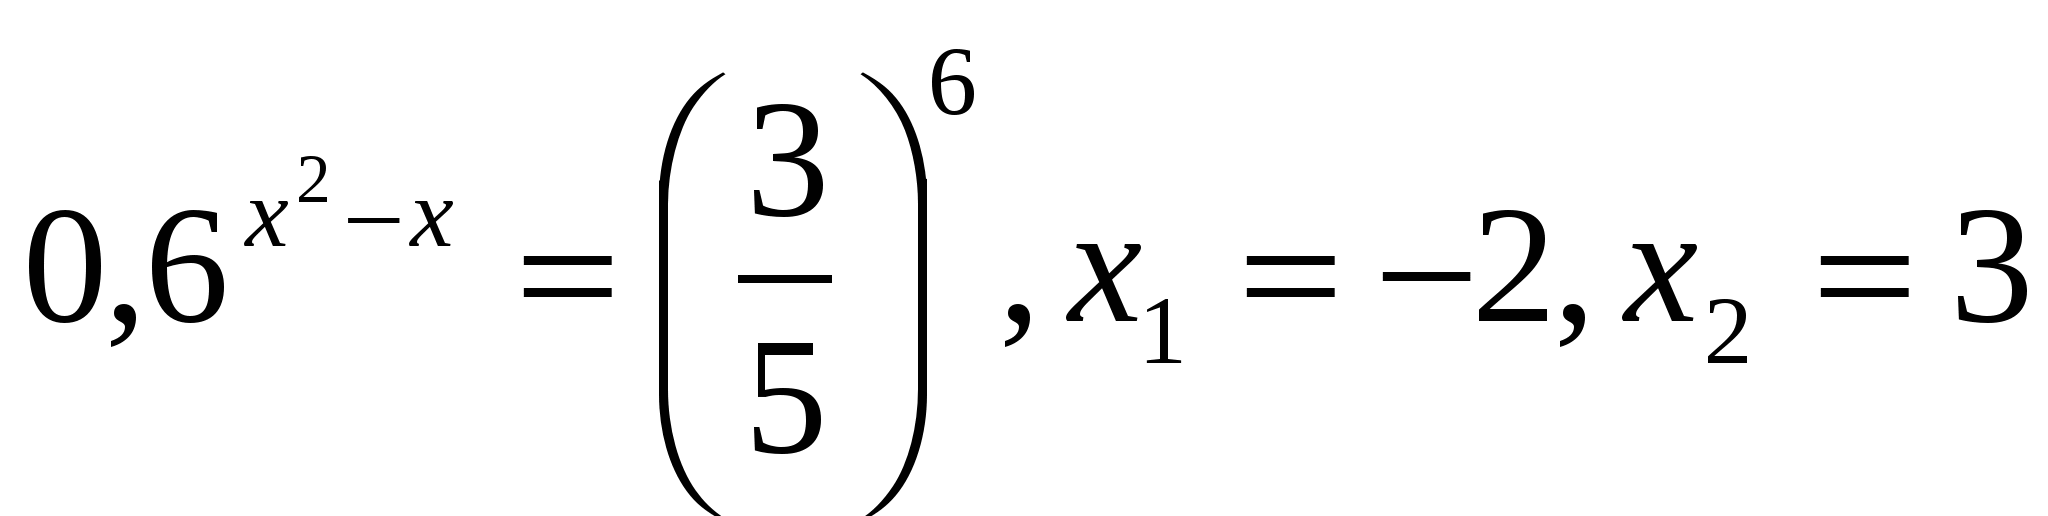 Методическая разработка открытого урока математики на тему: Решение показательных уравнений